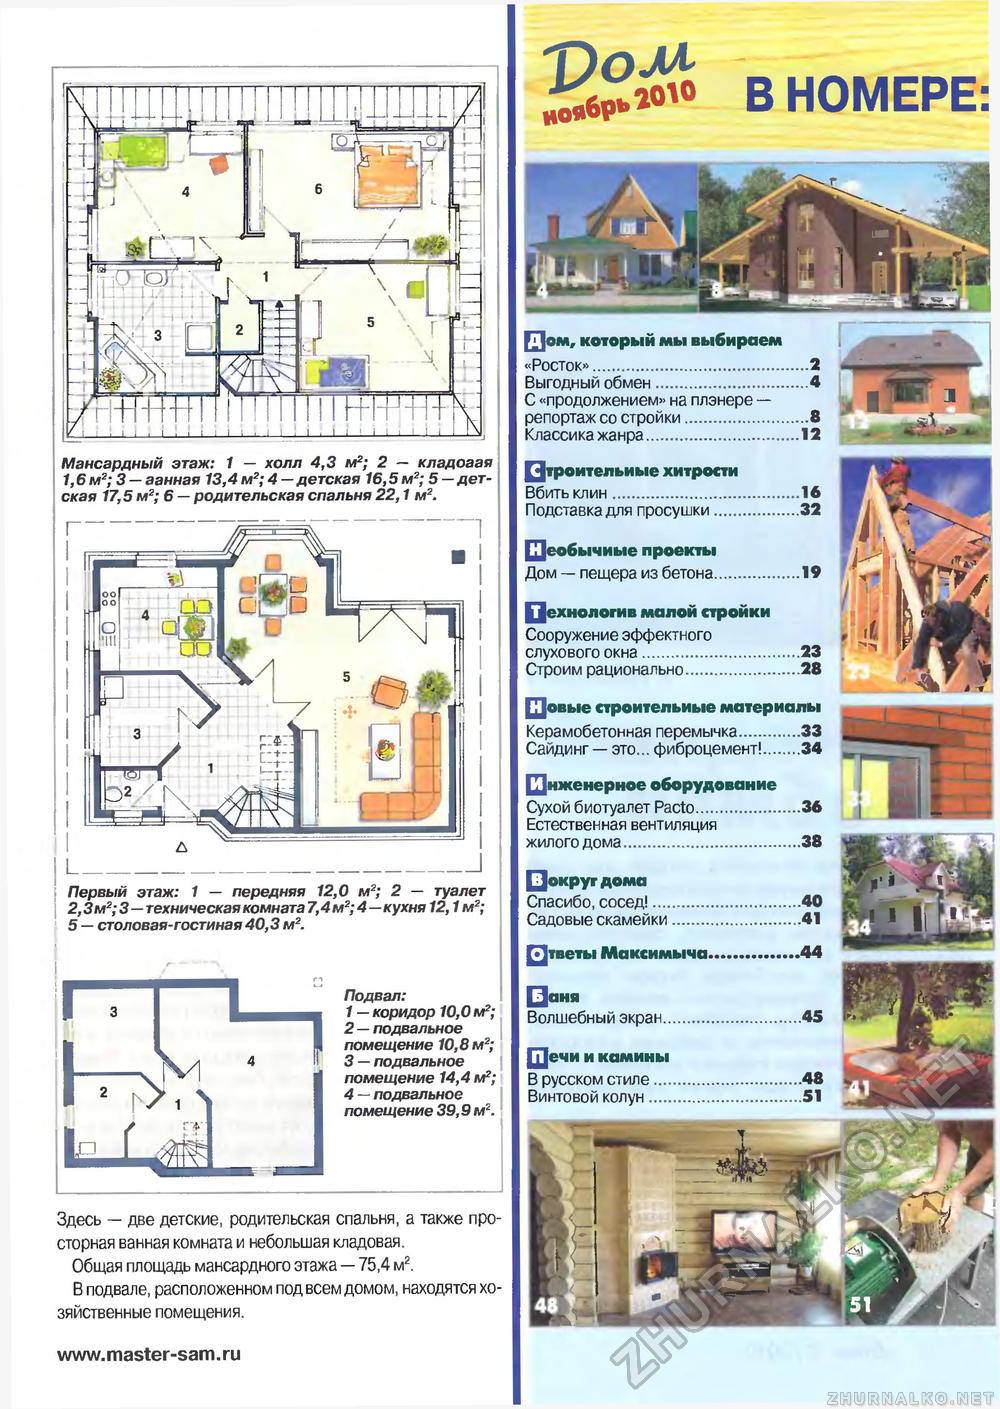 Дом 2010-11, страница 3